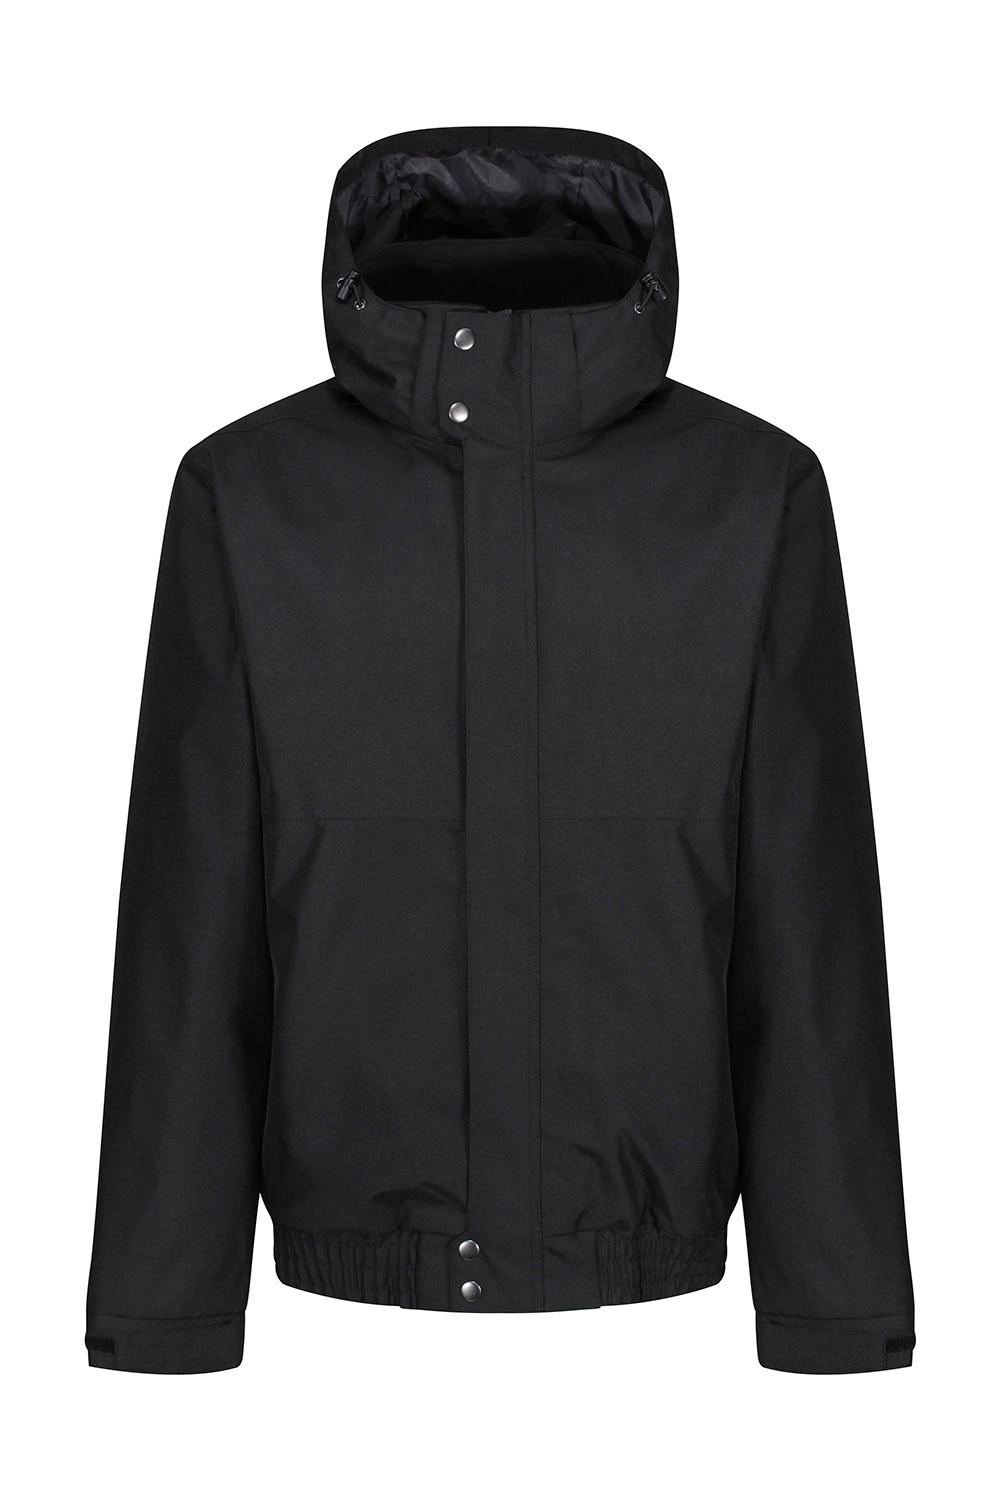 Blockade Waterproof Jacket zum Besticken und Bedrucken in der Farbe Black mit Ihren Logo, Schriftzug oder Motiv.